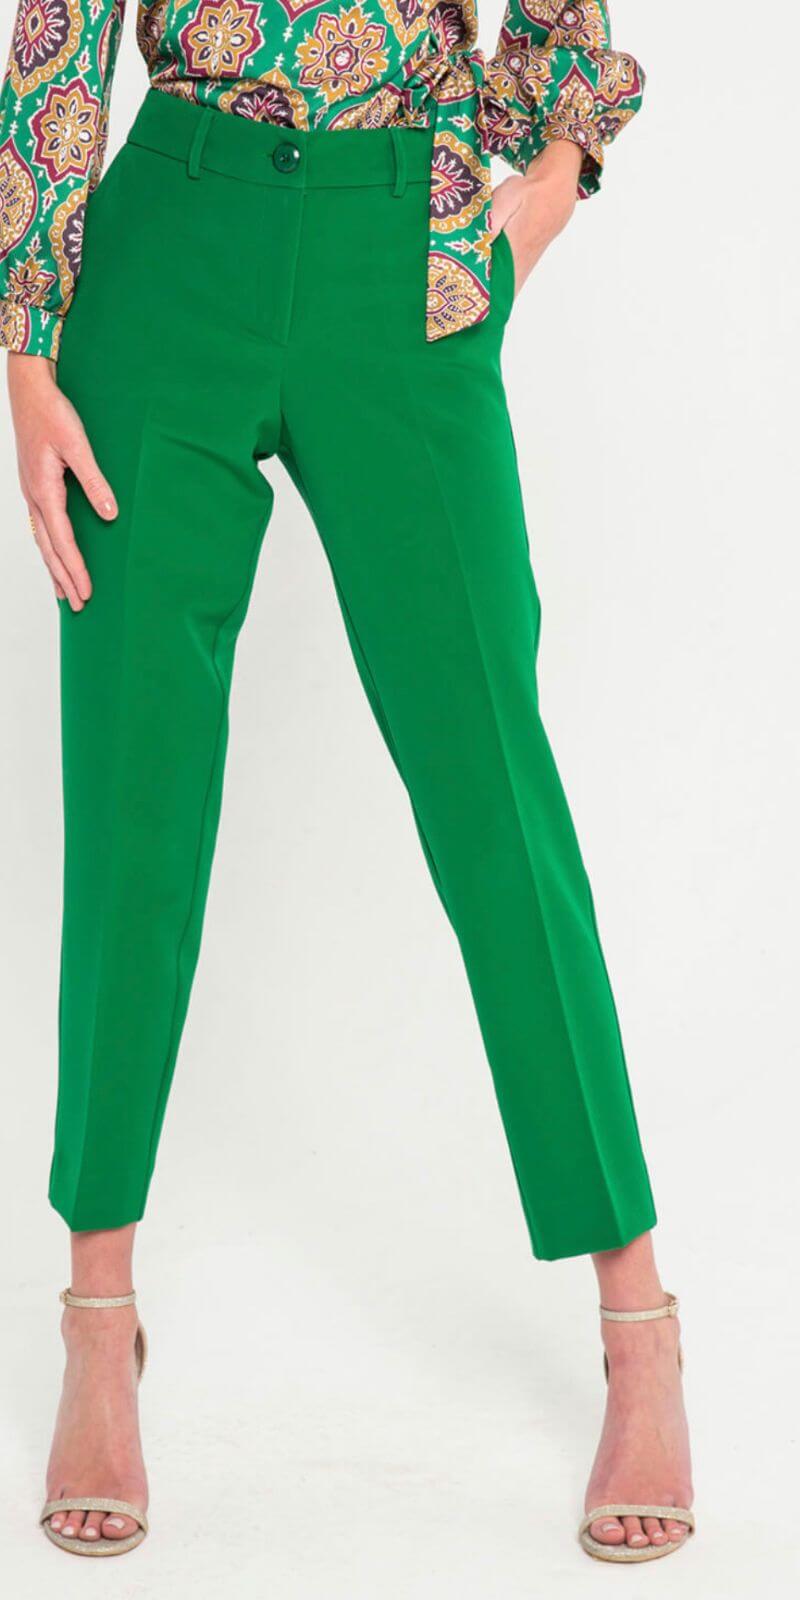 Παντελόνι Γυναικείο Σε Ίσια Γραμμή – XXXL, Πράσινο-My Boutique